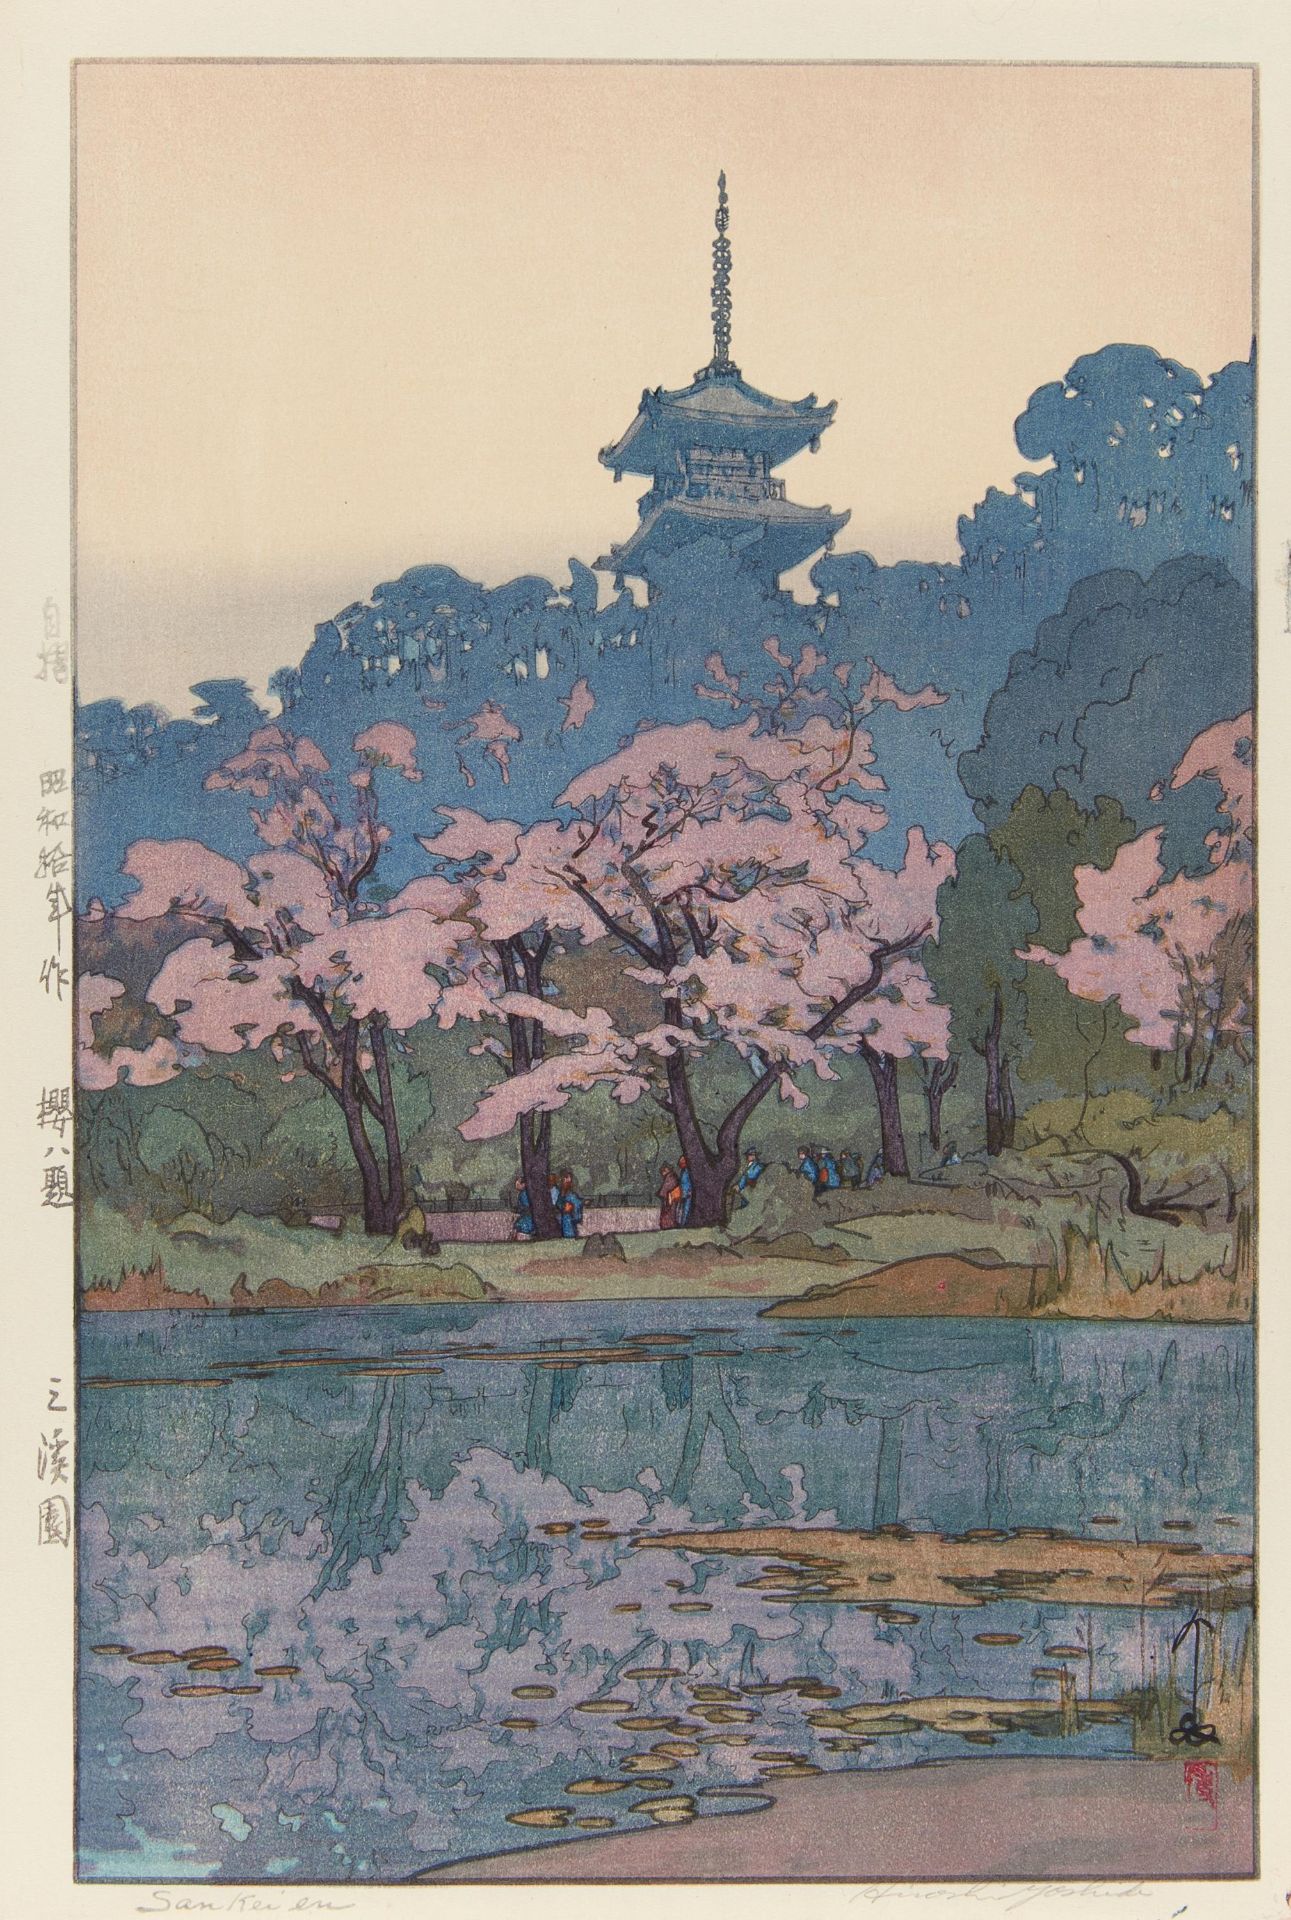 HOLZSCHNITT: SANKEIEN. Japan. Shôwa-Zeit. 1935. Nishiki-e. Aus der Serie Sakura hachidai (Acht